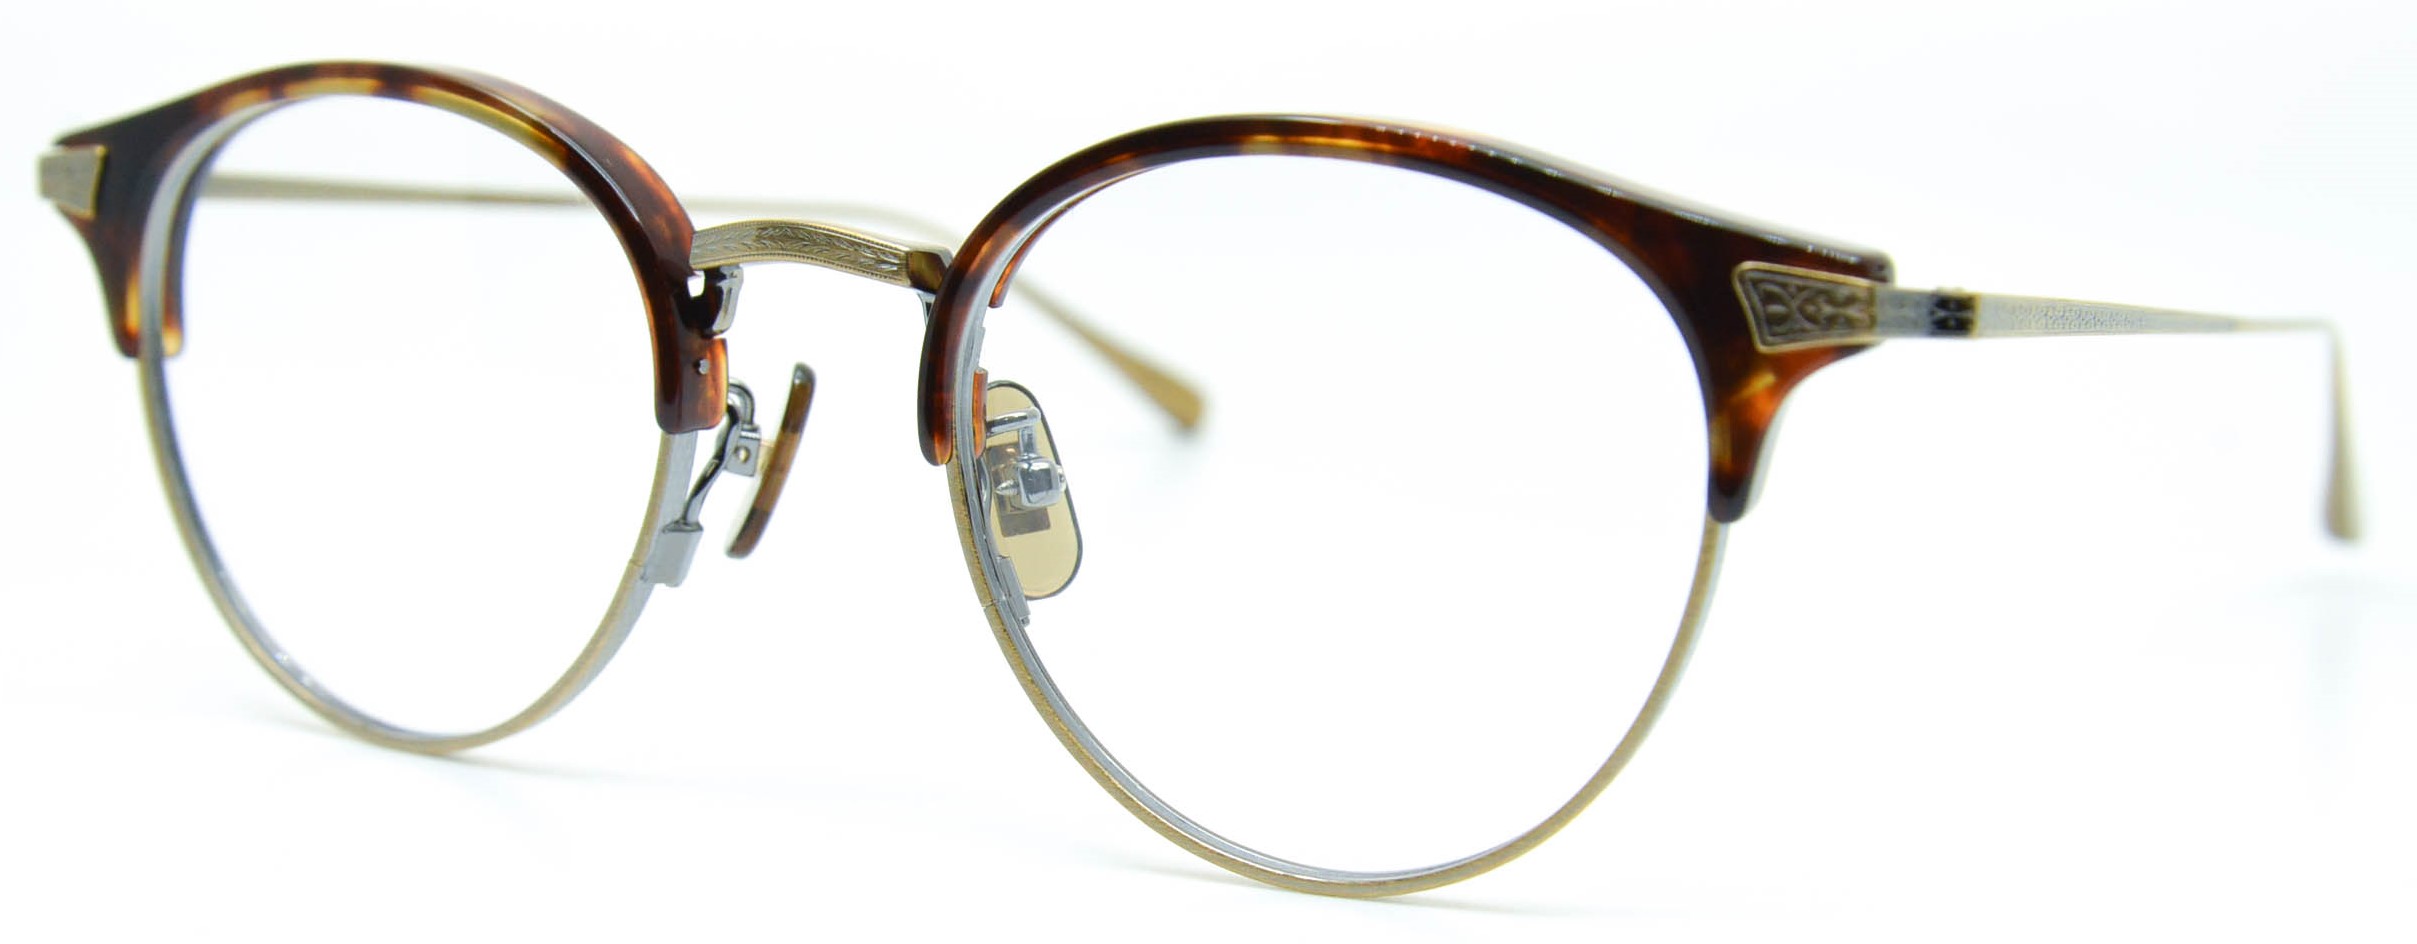 眼鏡のカラータイプC-2 Tortoise/At-Gold